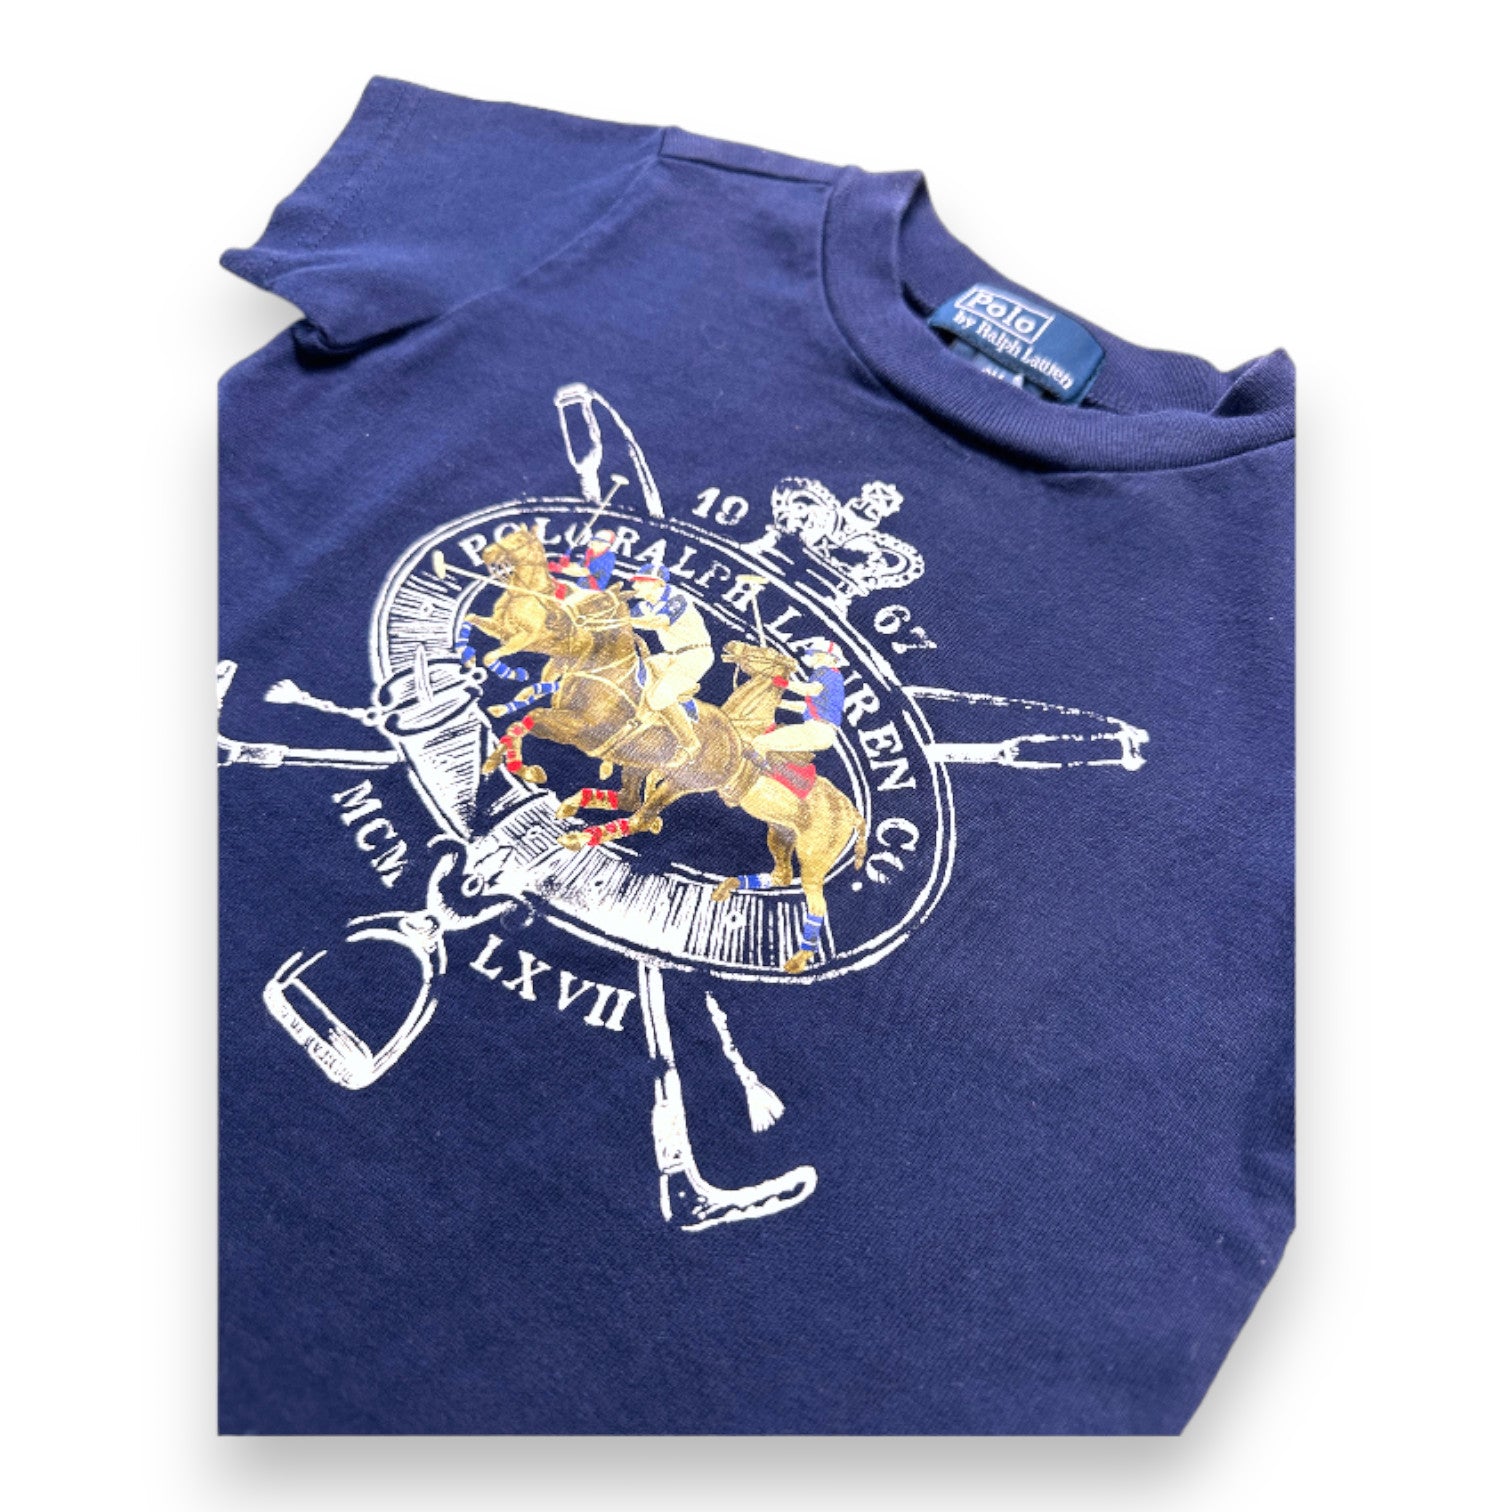 RALPH LAUREN - T-shirt bleu marine avec imprimé Ralph Lauren - 9 mois